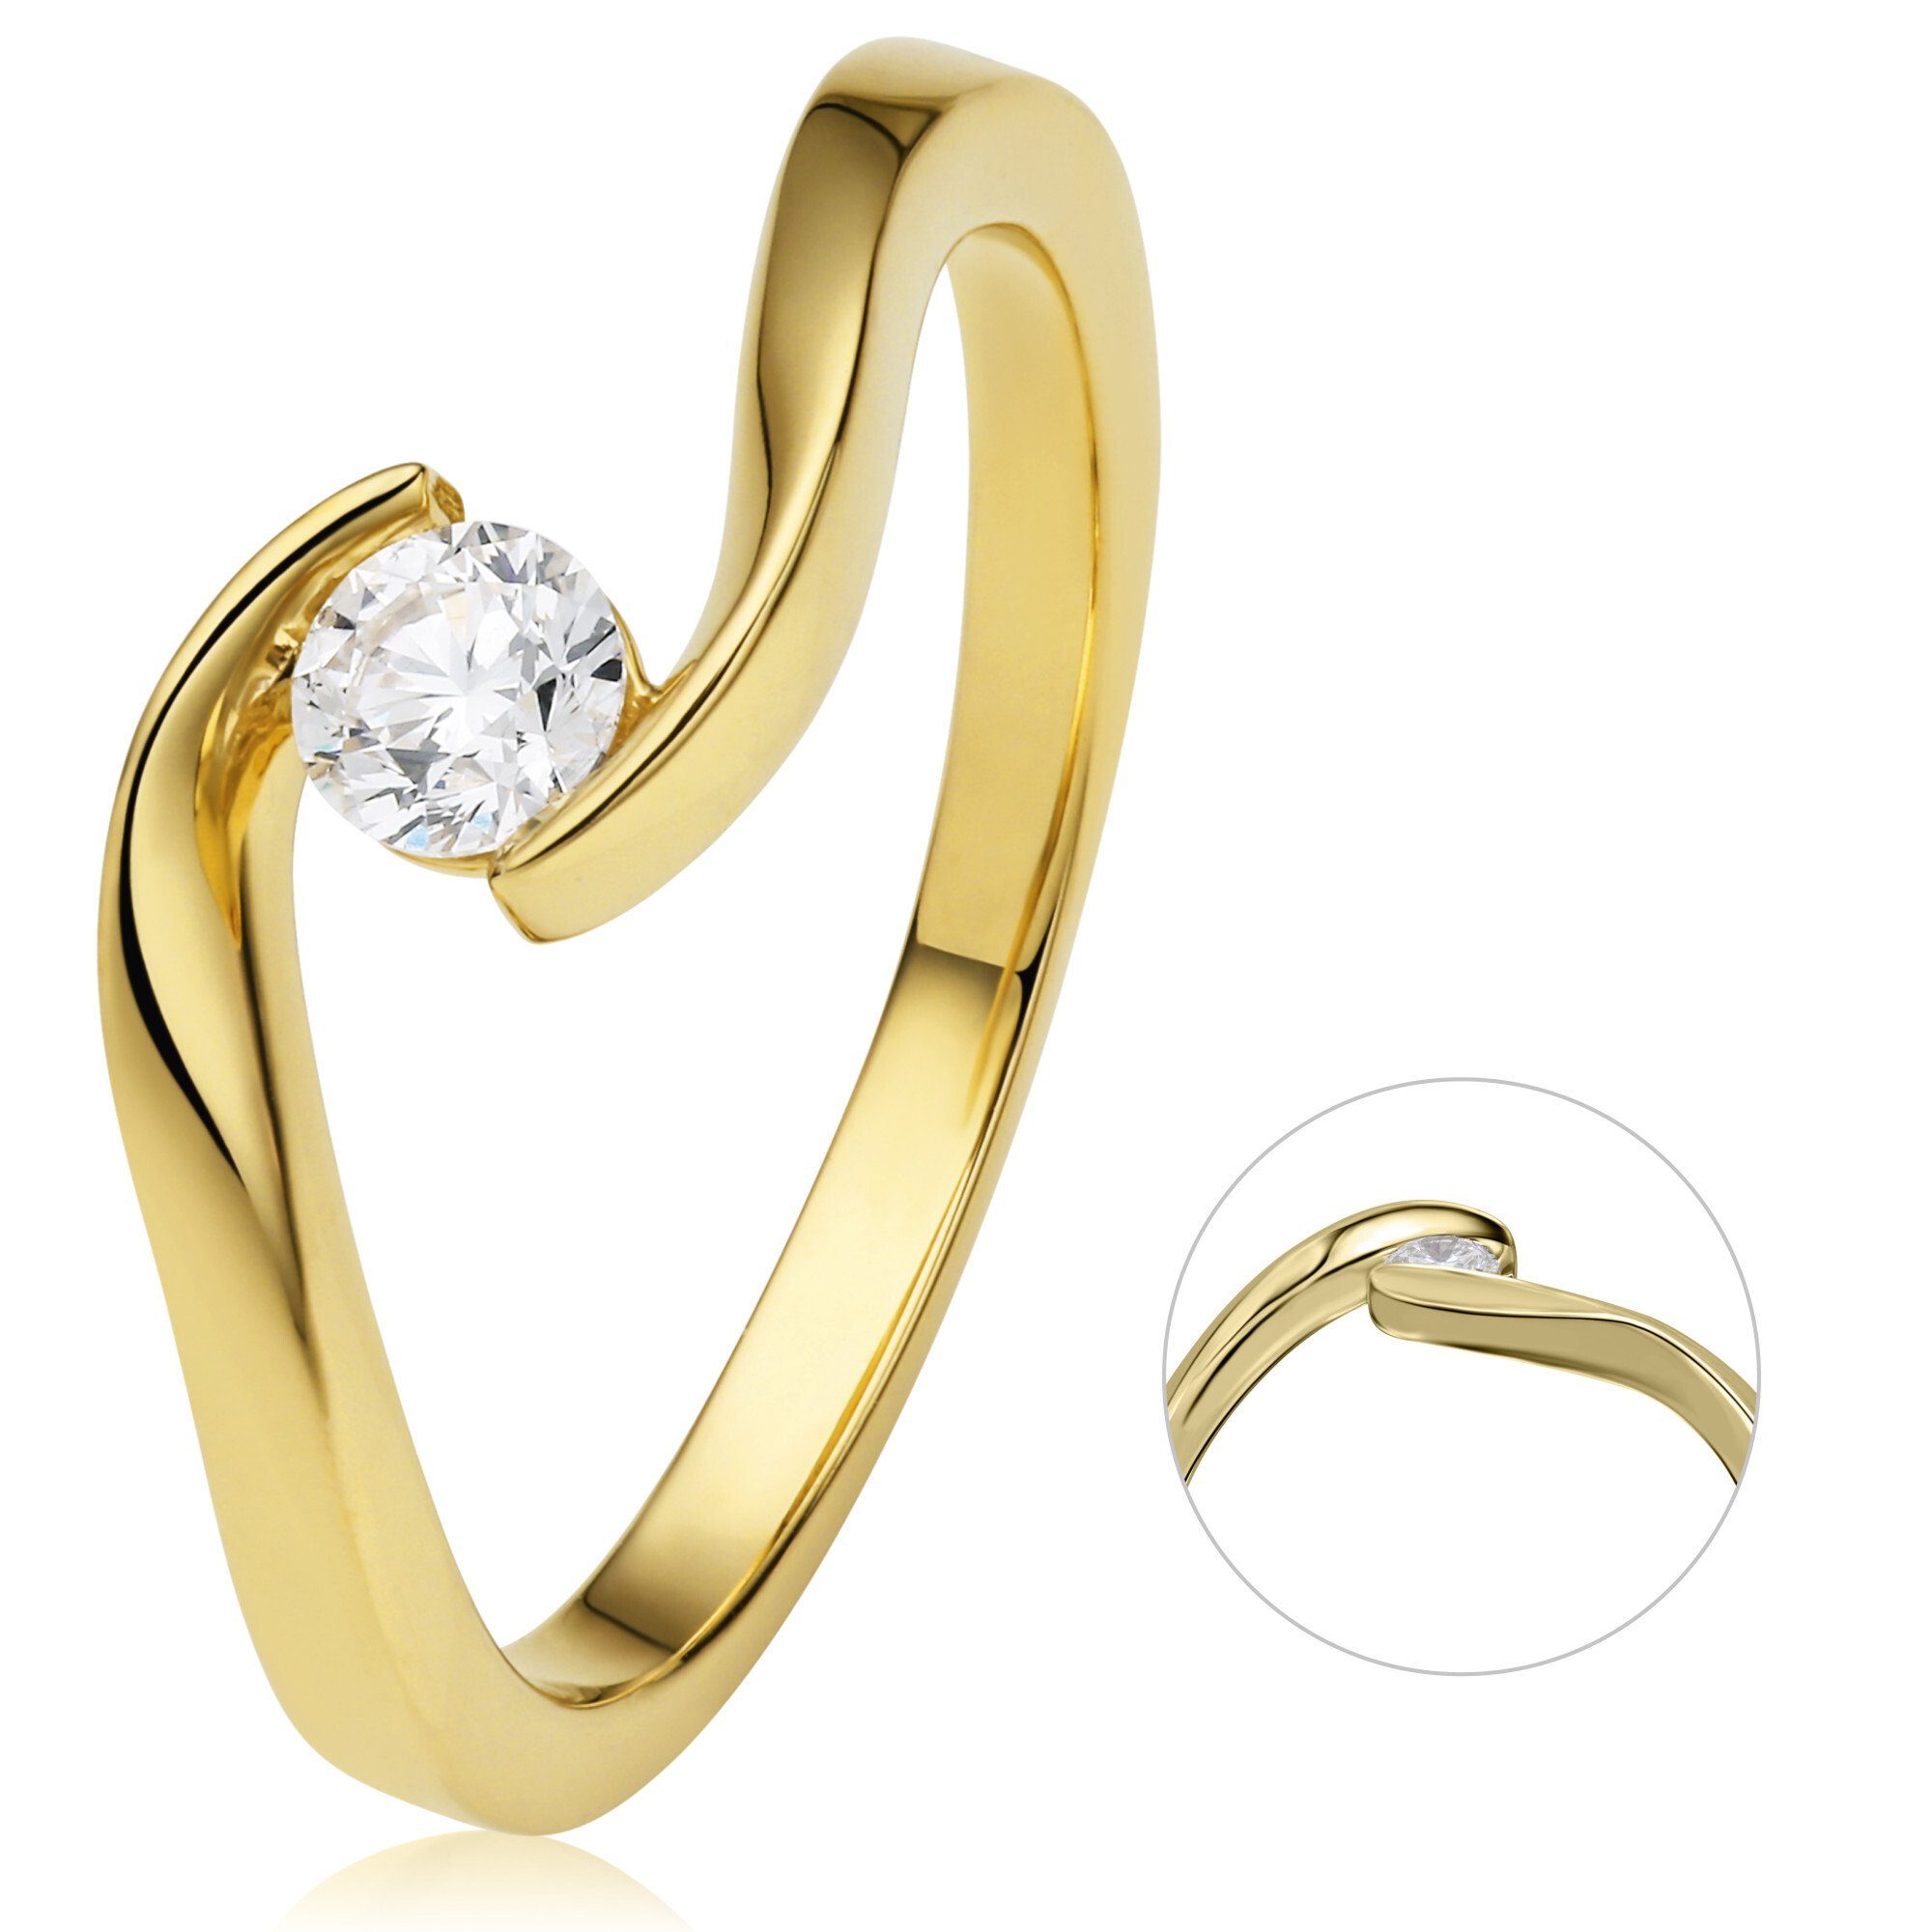 ONE ELEMENT Diamantring 0,25 ct Diamant Brillant Spannfassung Ring aus 750 Gelbgold, Damen Gold Schmuck Spannfassung